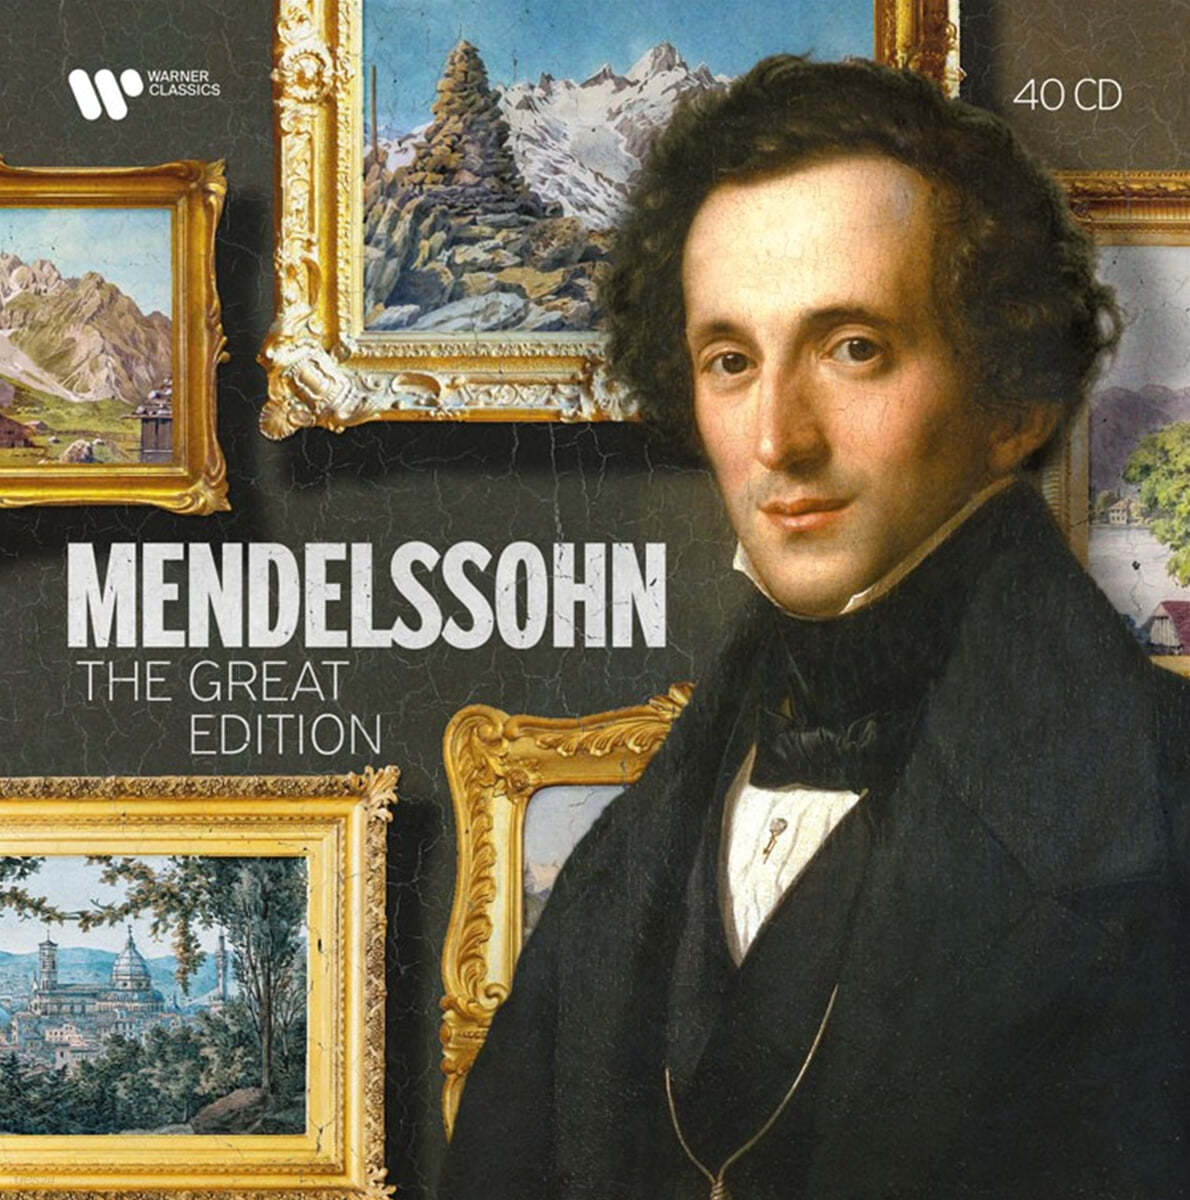 멘델스존 에디션 (Mendelssohn The Great Edition)